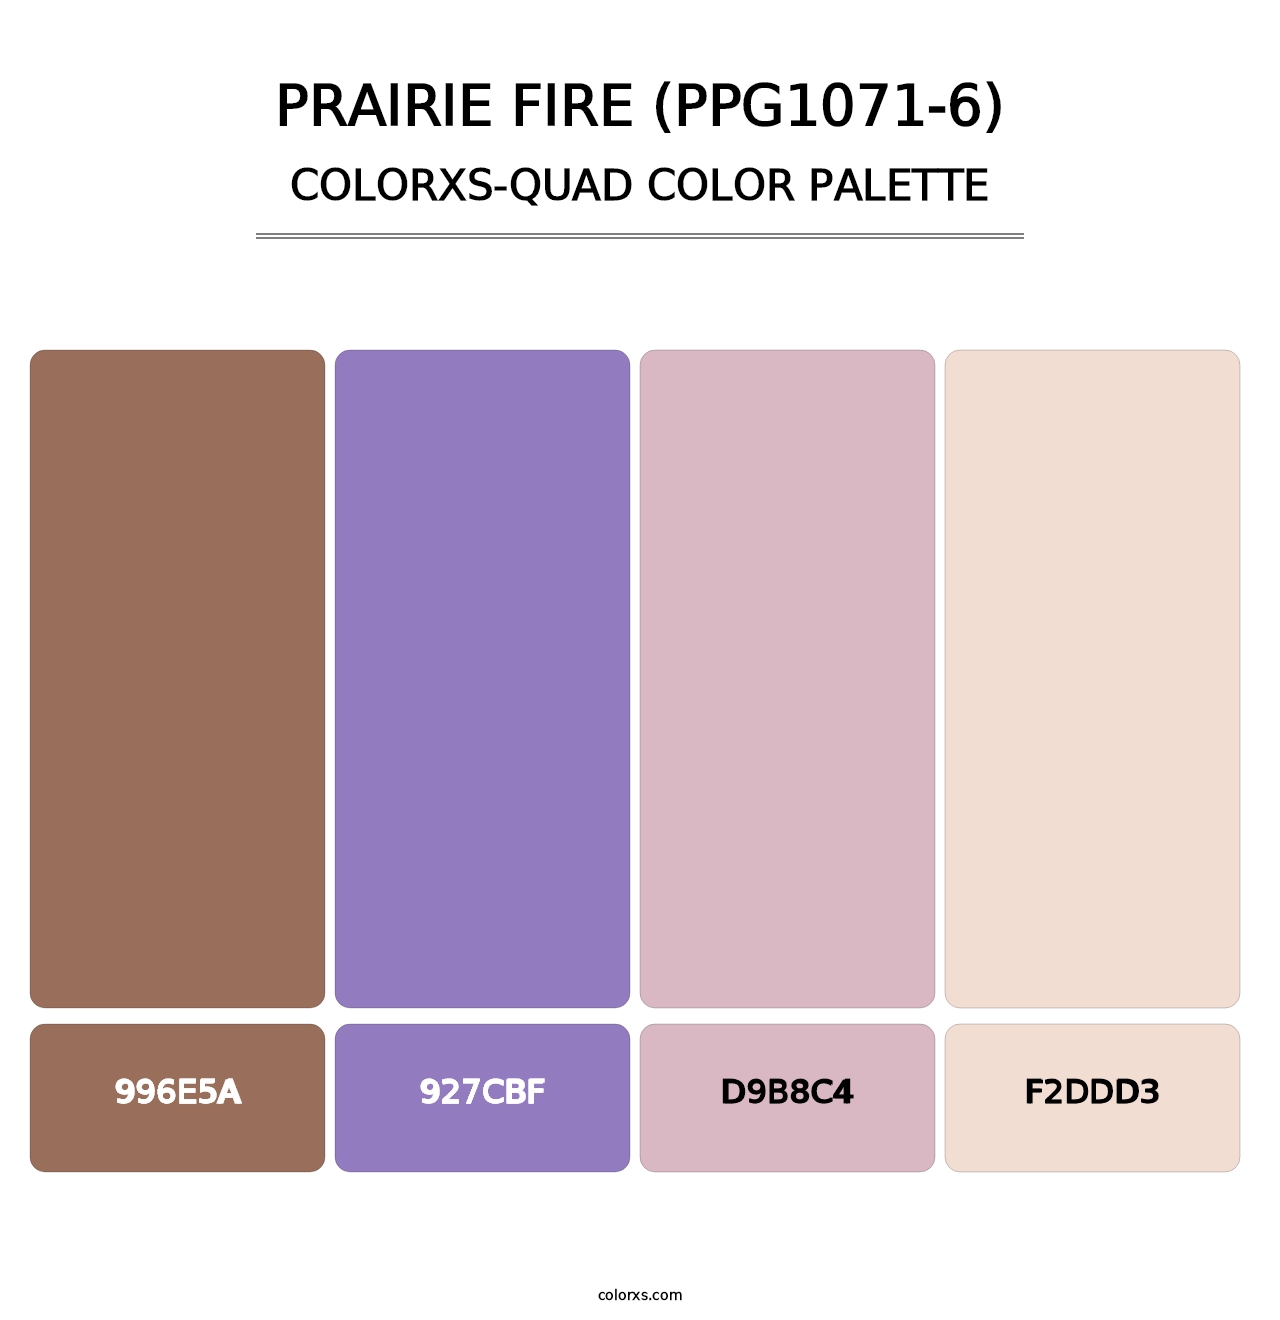 Prairie Fire (PPG1071-6) - Colorxs Quad Palette